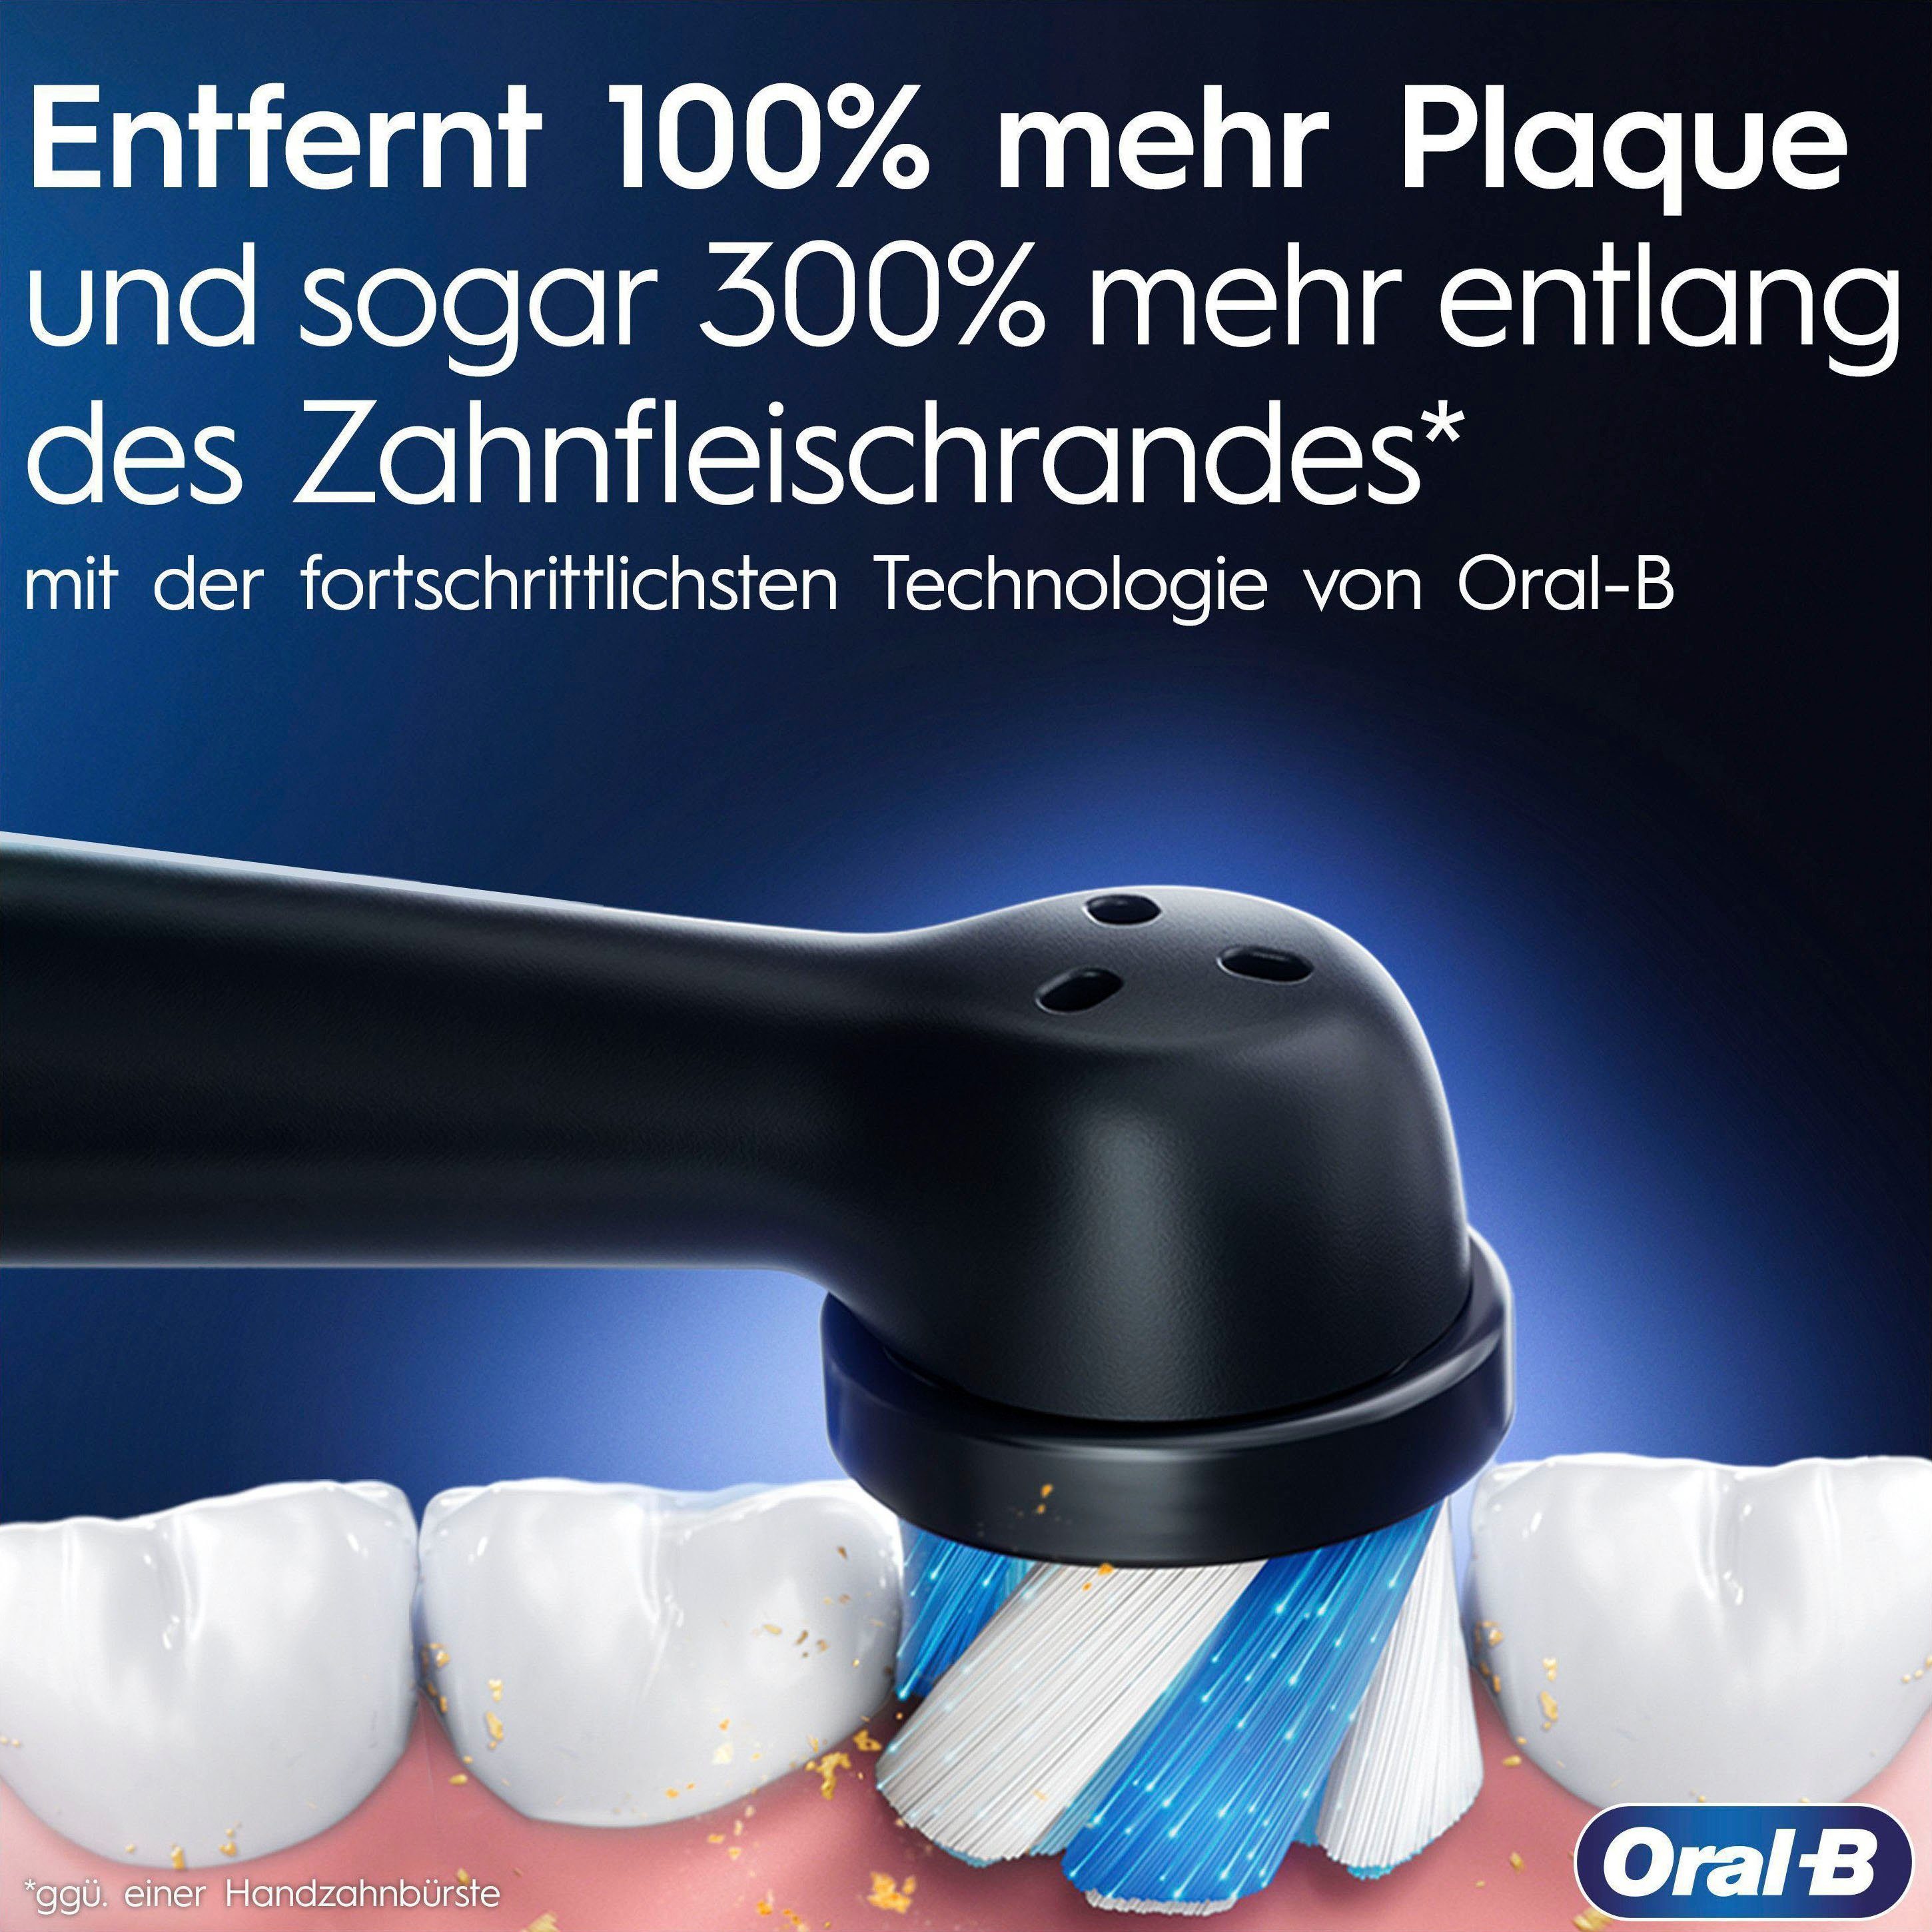 Oral-B Elektrische Zahnbürste Aqua 1 7 Marine mit Farbdisplay St., Magnet-Technologie, Edition, Putzmodi, Aufsteckbürsten: Lade-Reiseetui iO Luxe 9 &